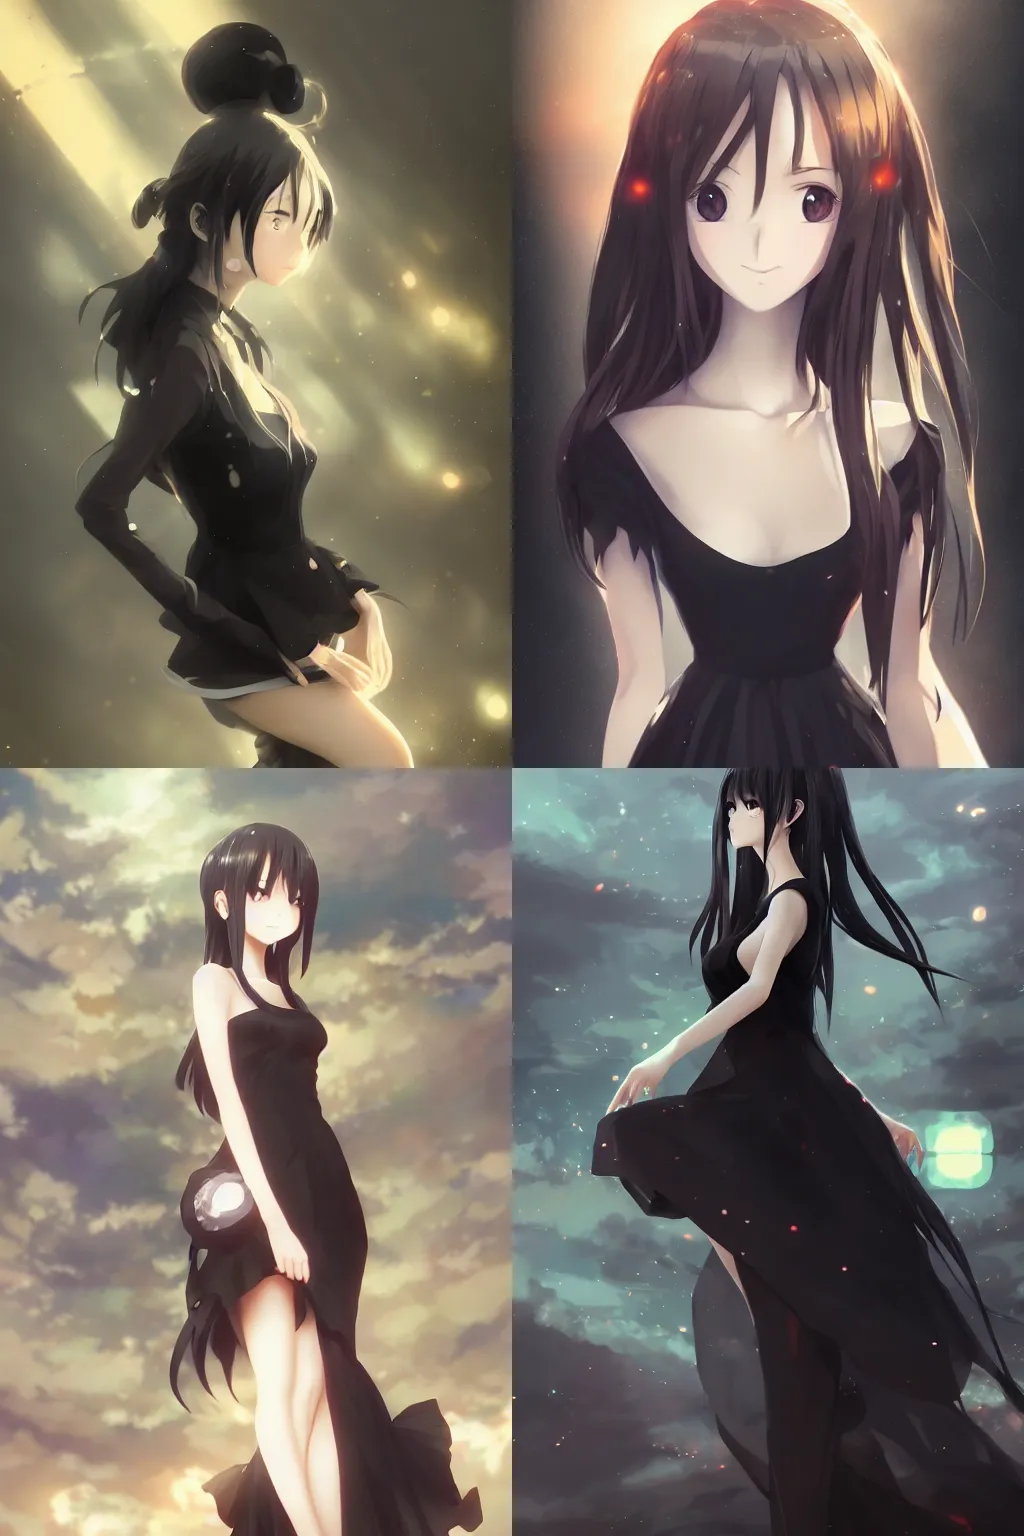 HD wallpaper: female anime character wearing black dress illustration, anime  girls | Wallpaper Flare